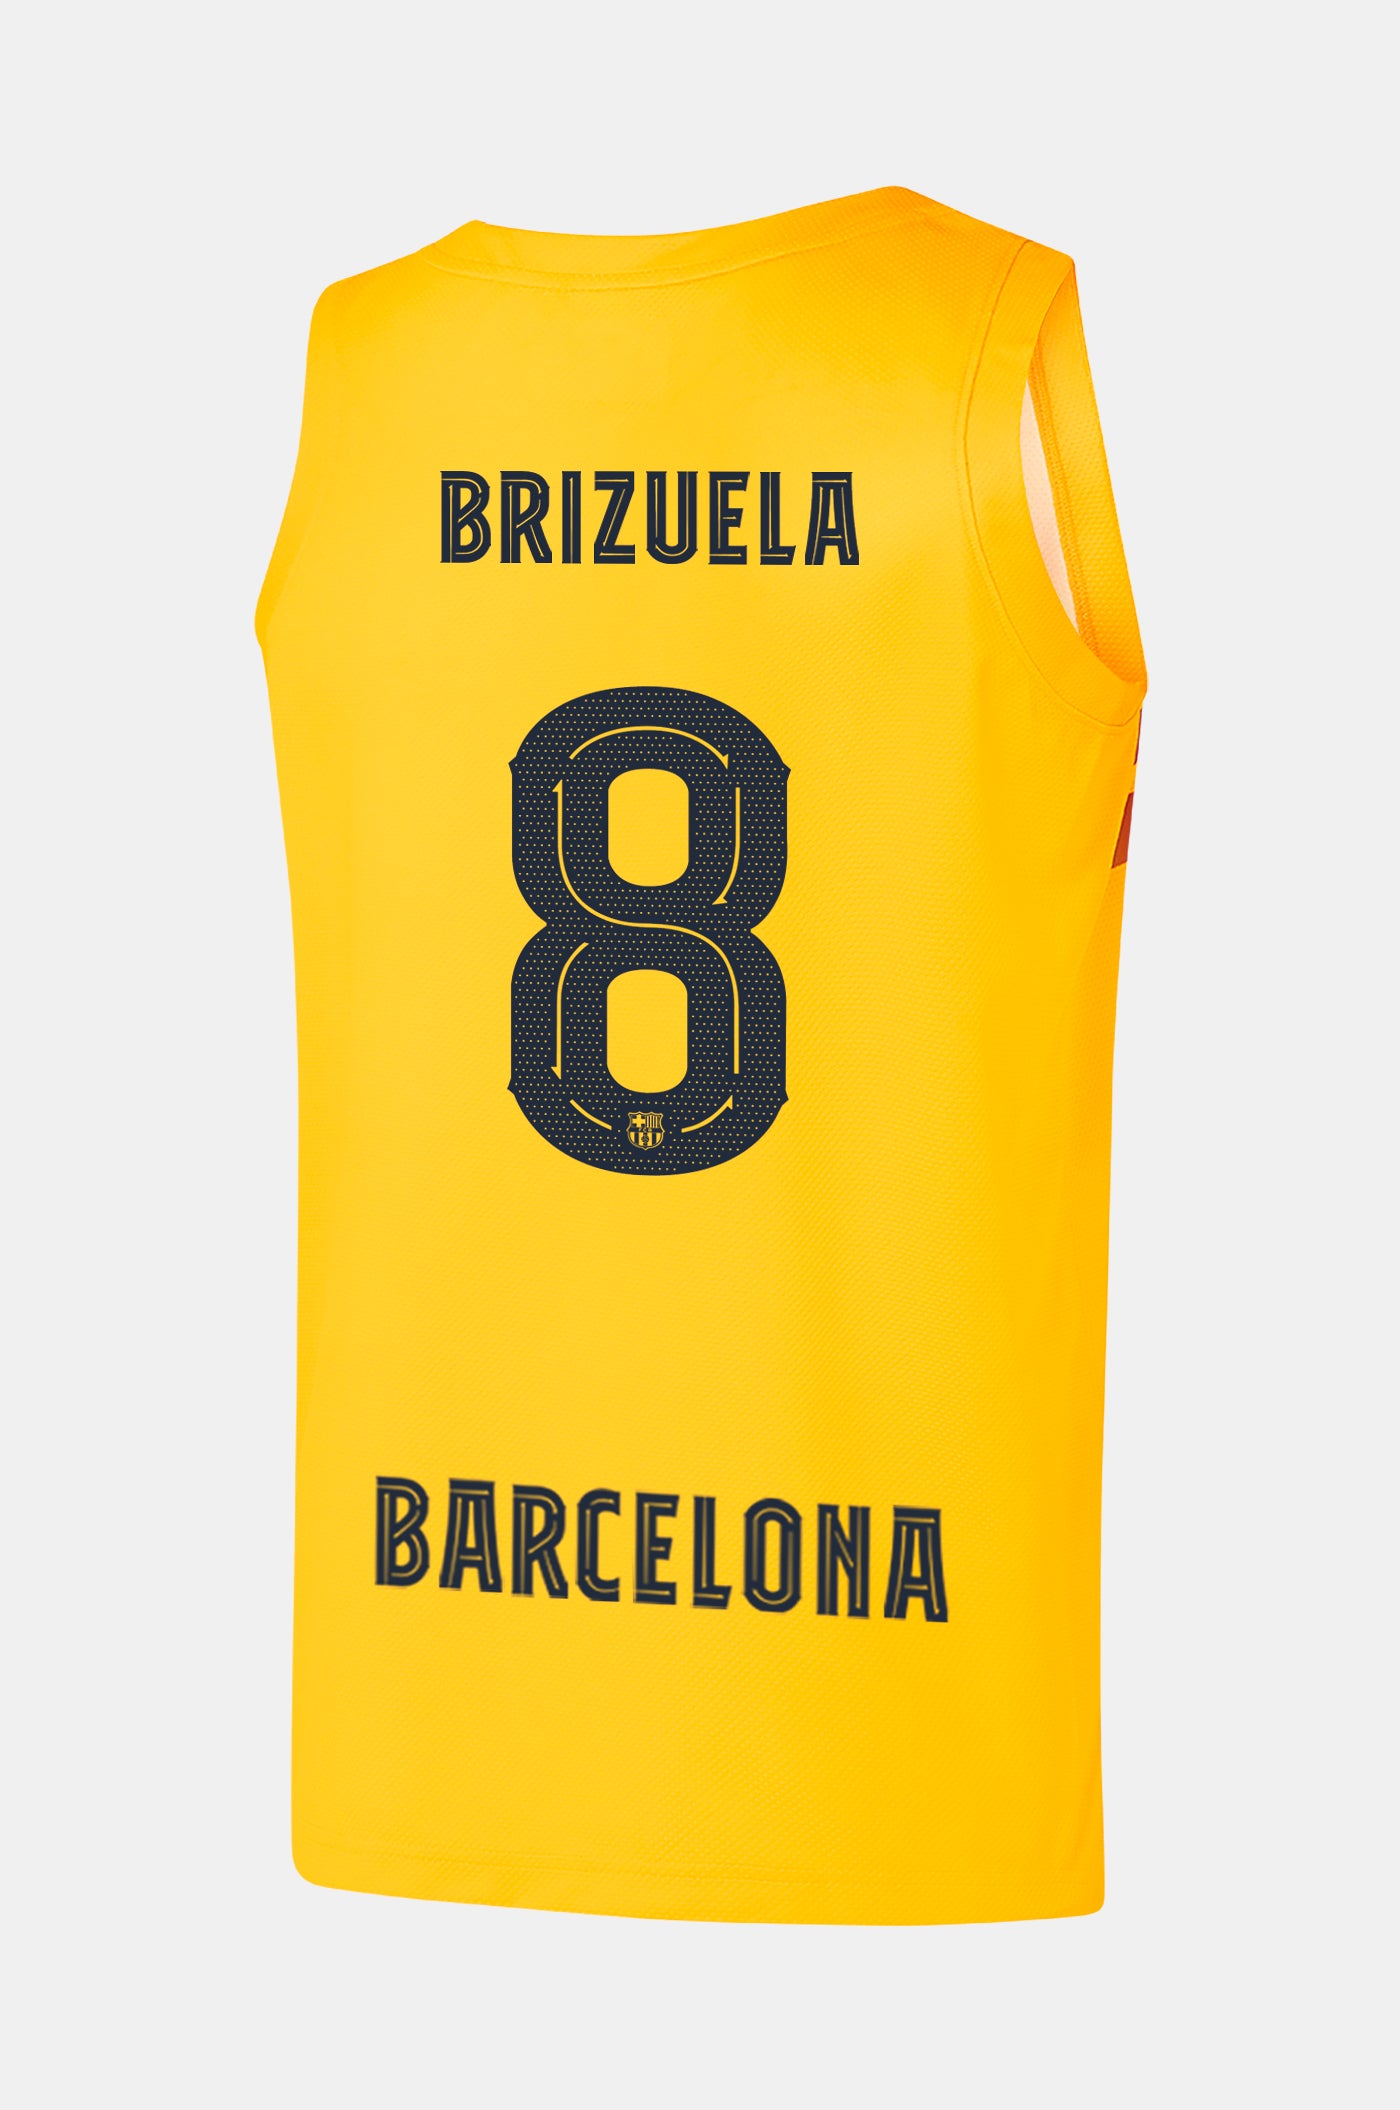 EUROLEAGUE - Samarreta bàsquet 4t equipament FC Barcelona 22/23 - BRIZUELA